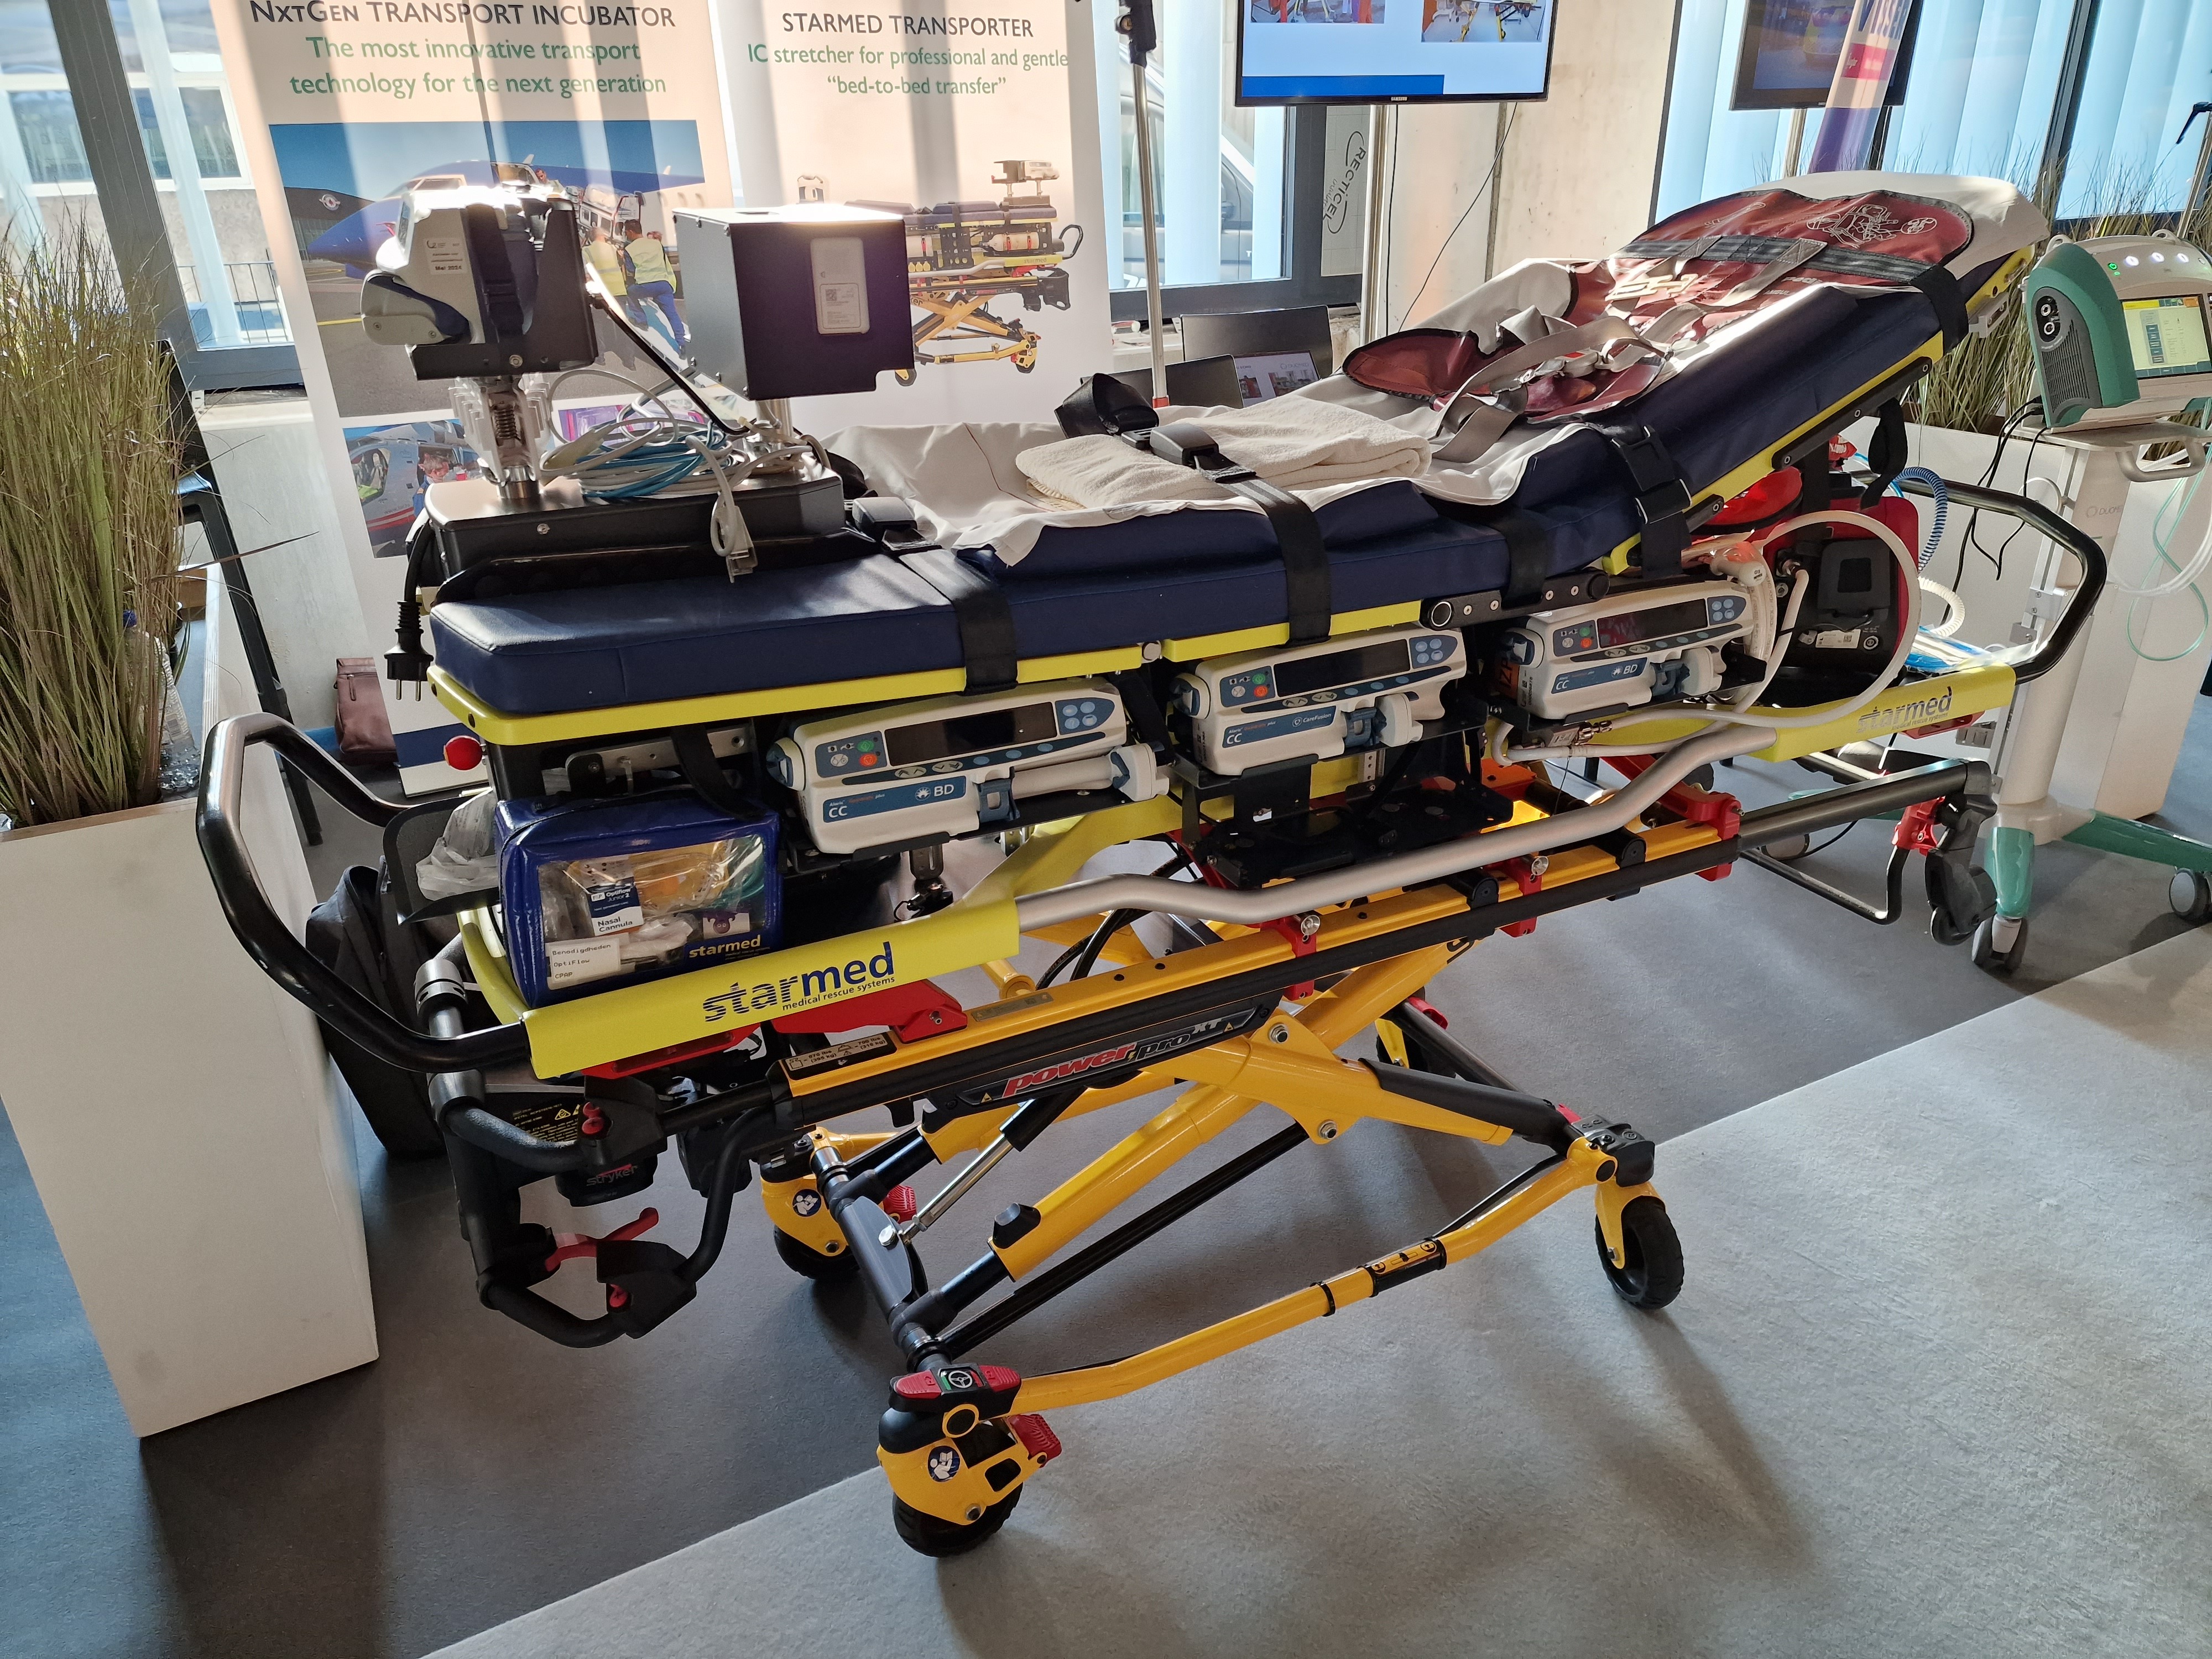 Nouvelle ambulance haute technologie pour l’UZ Brussel  7gpk